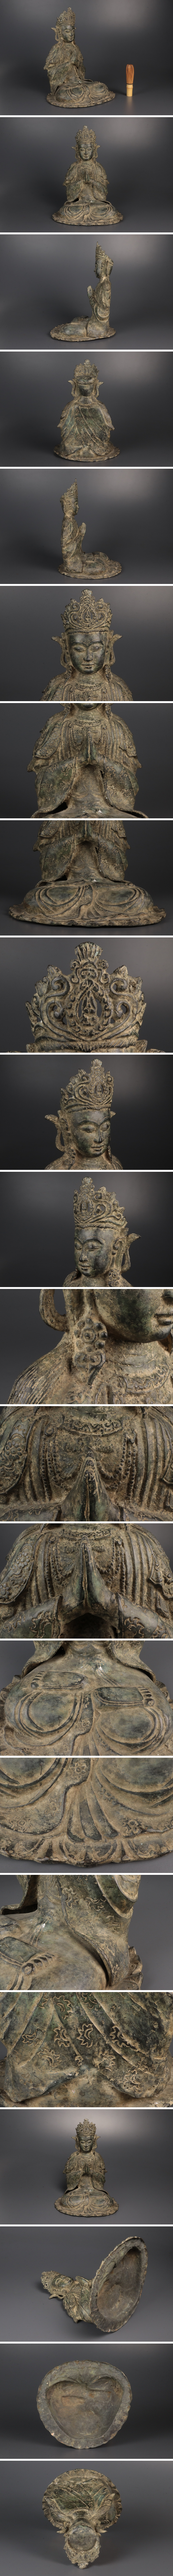 純正直売仏教美術 銅製 仏像 坐像 細密彫刻 置物 銅器 高さ:約32cm 骨董品 美術品 7929scy 仏像